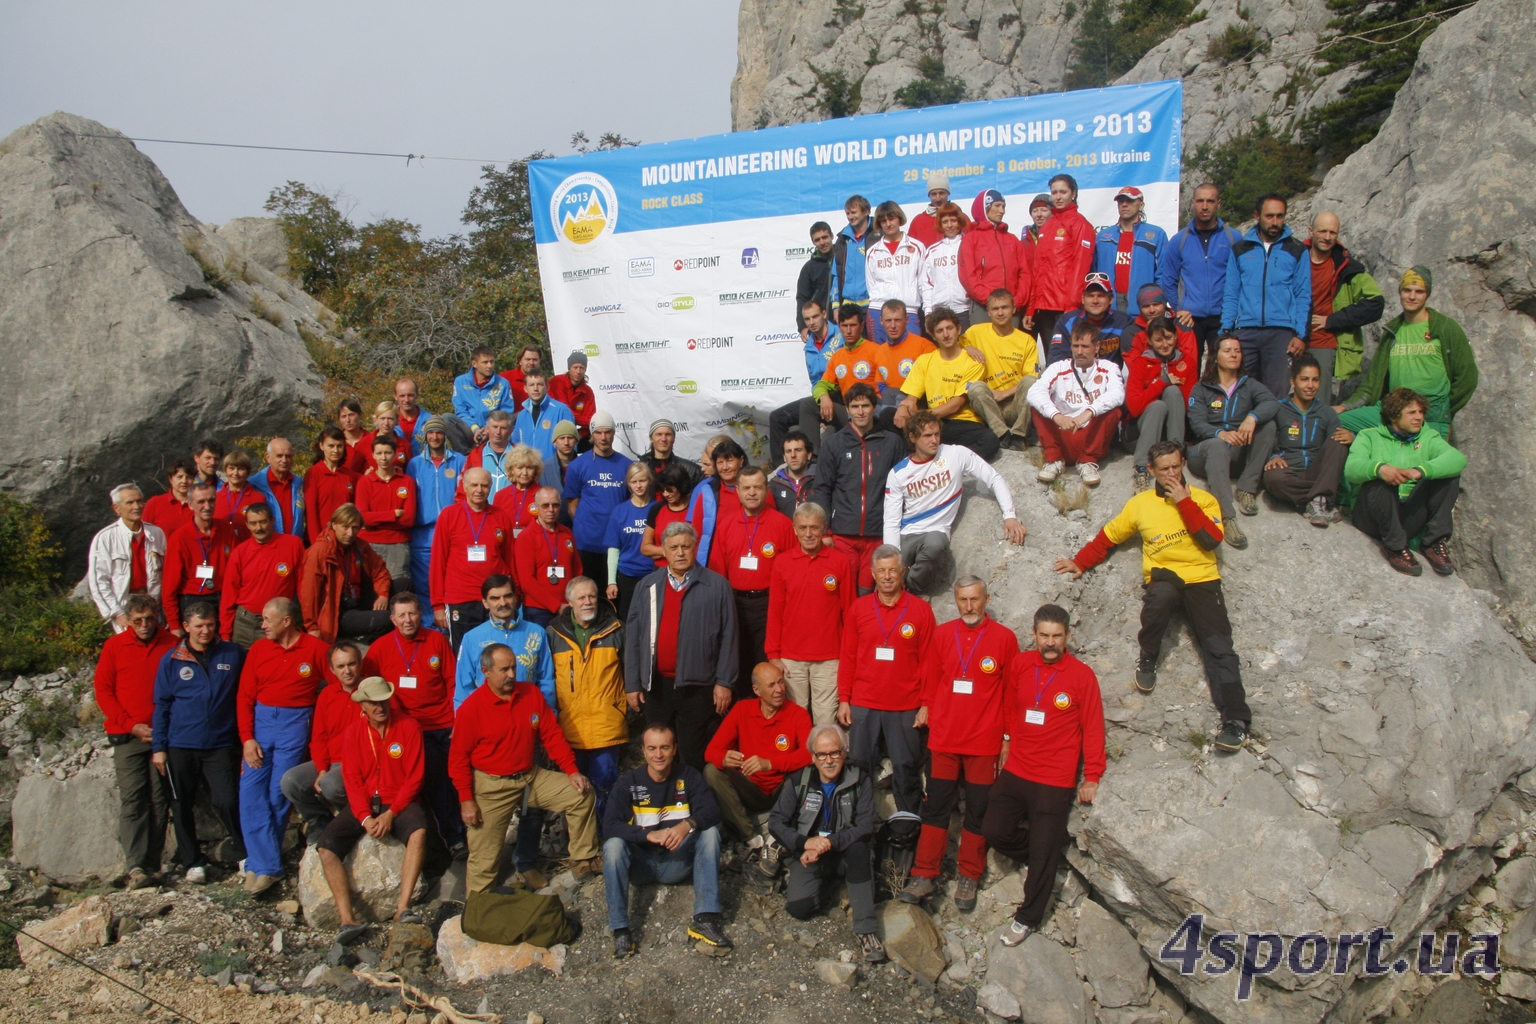  Чемпионат мира по альпинизму в скальном классе 2013. Фото Дмитрия Киселева